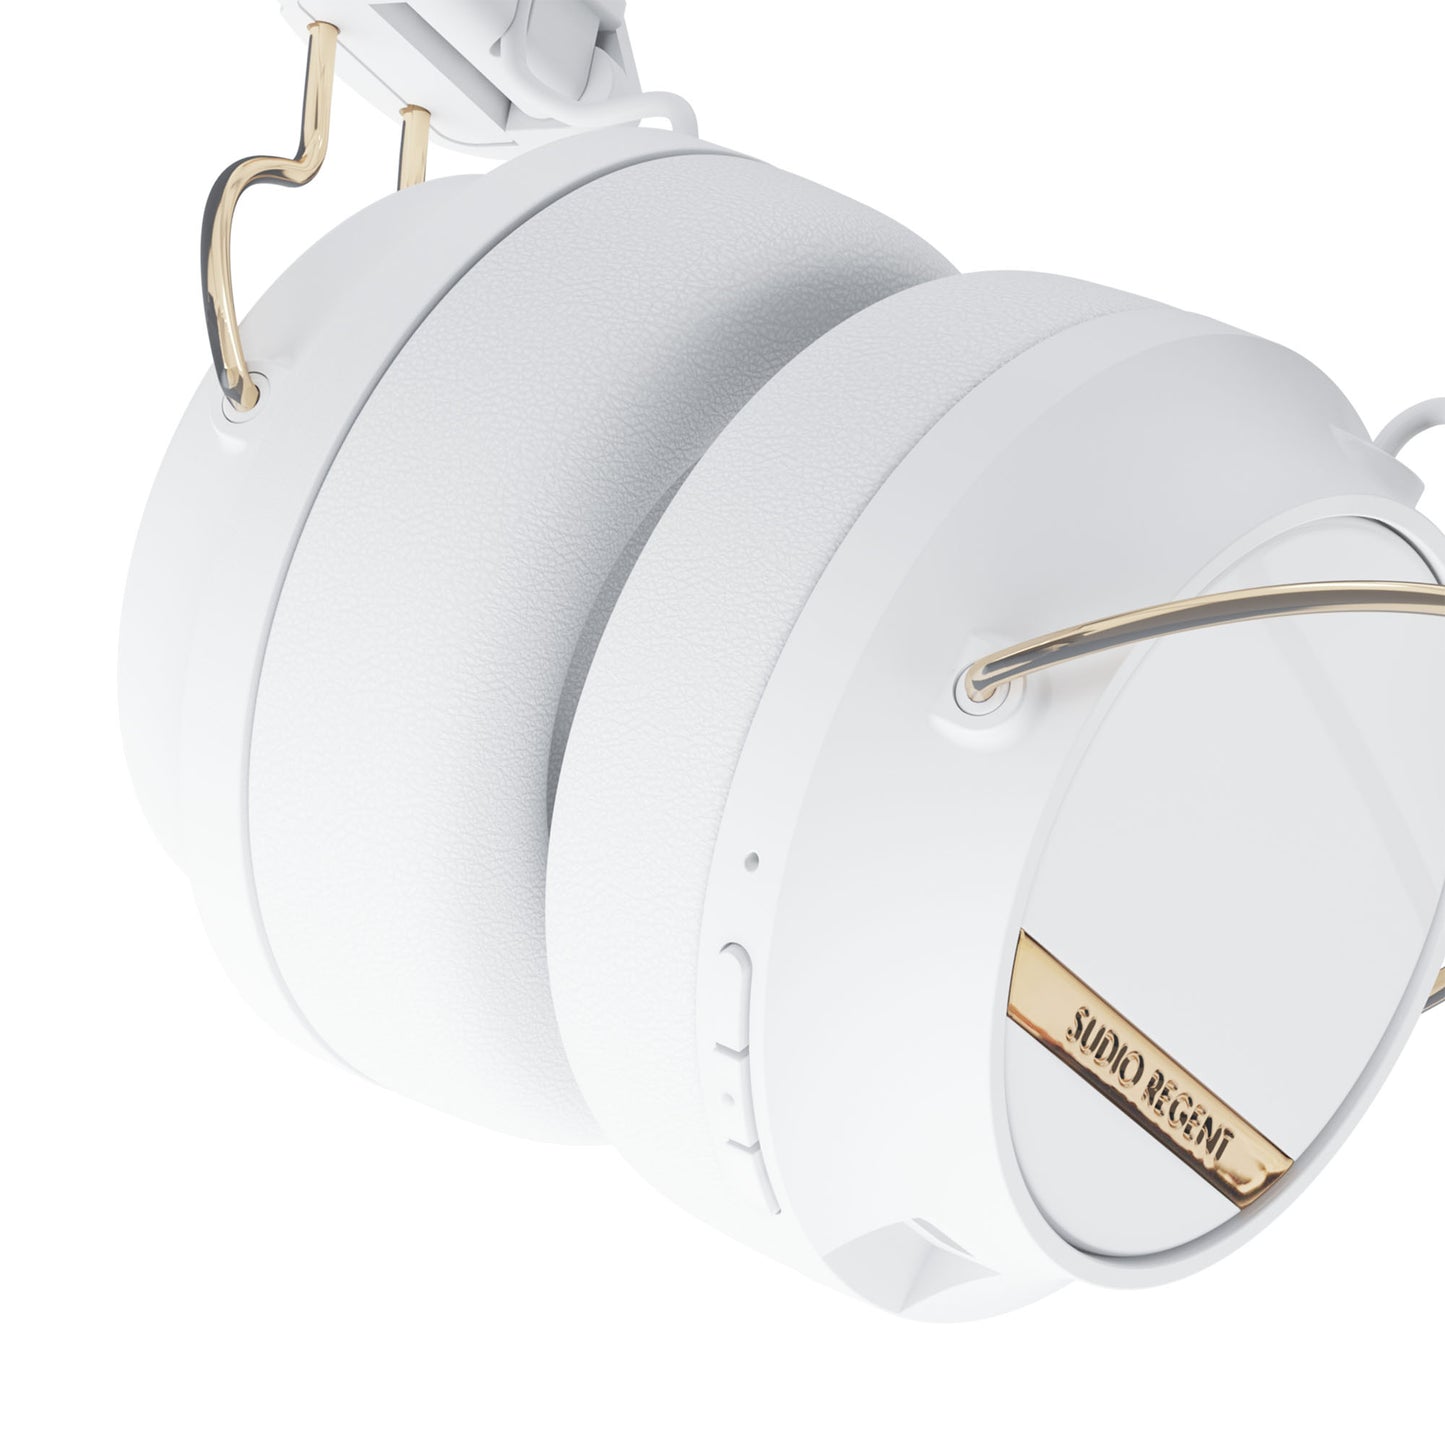 SUDIO Regent II Wireless On-Ear Headphones - White